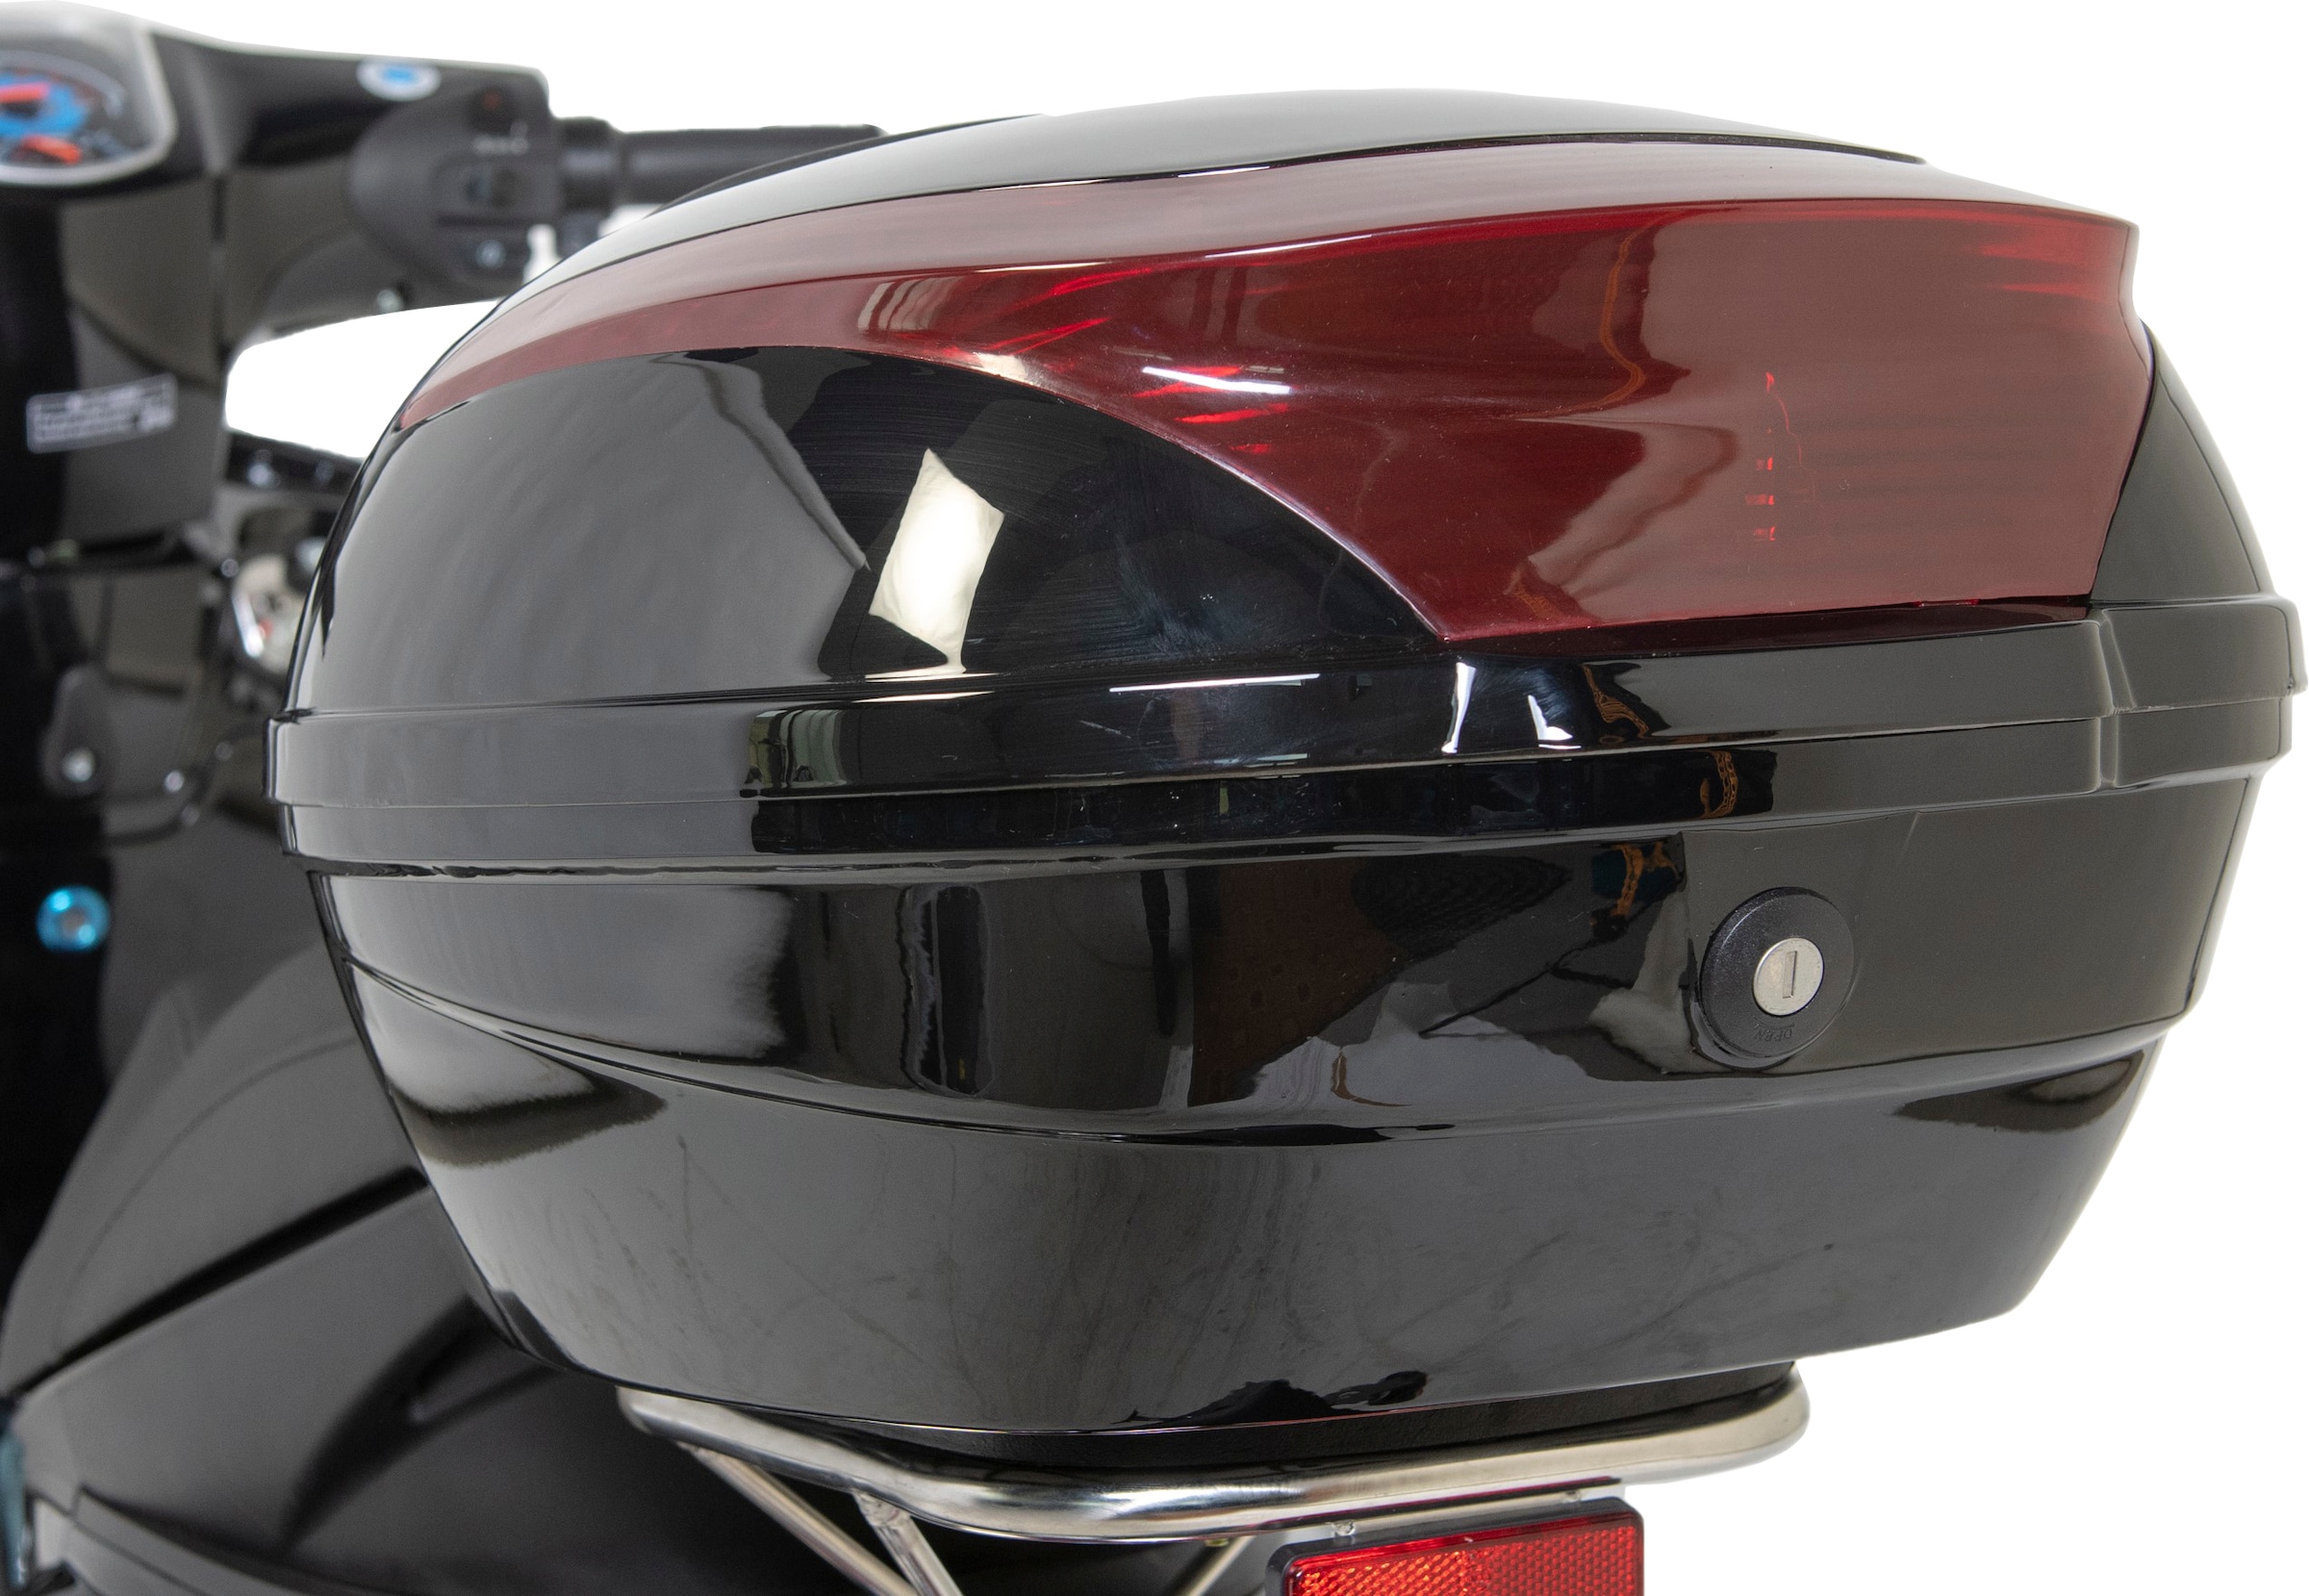 GT UNION Motorroller »Sonic X 50-45«, 50 cm³, 45 km/h, Euro 5, 3 PS,  (Komplett-Set, 2 tlg., mit Topcase), inkl. Topcase auf Rechnung | BAUR